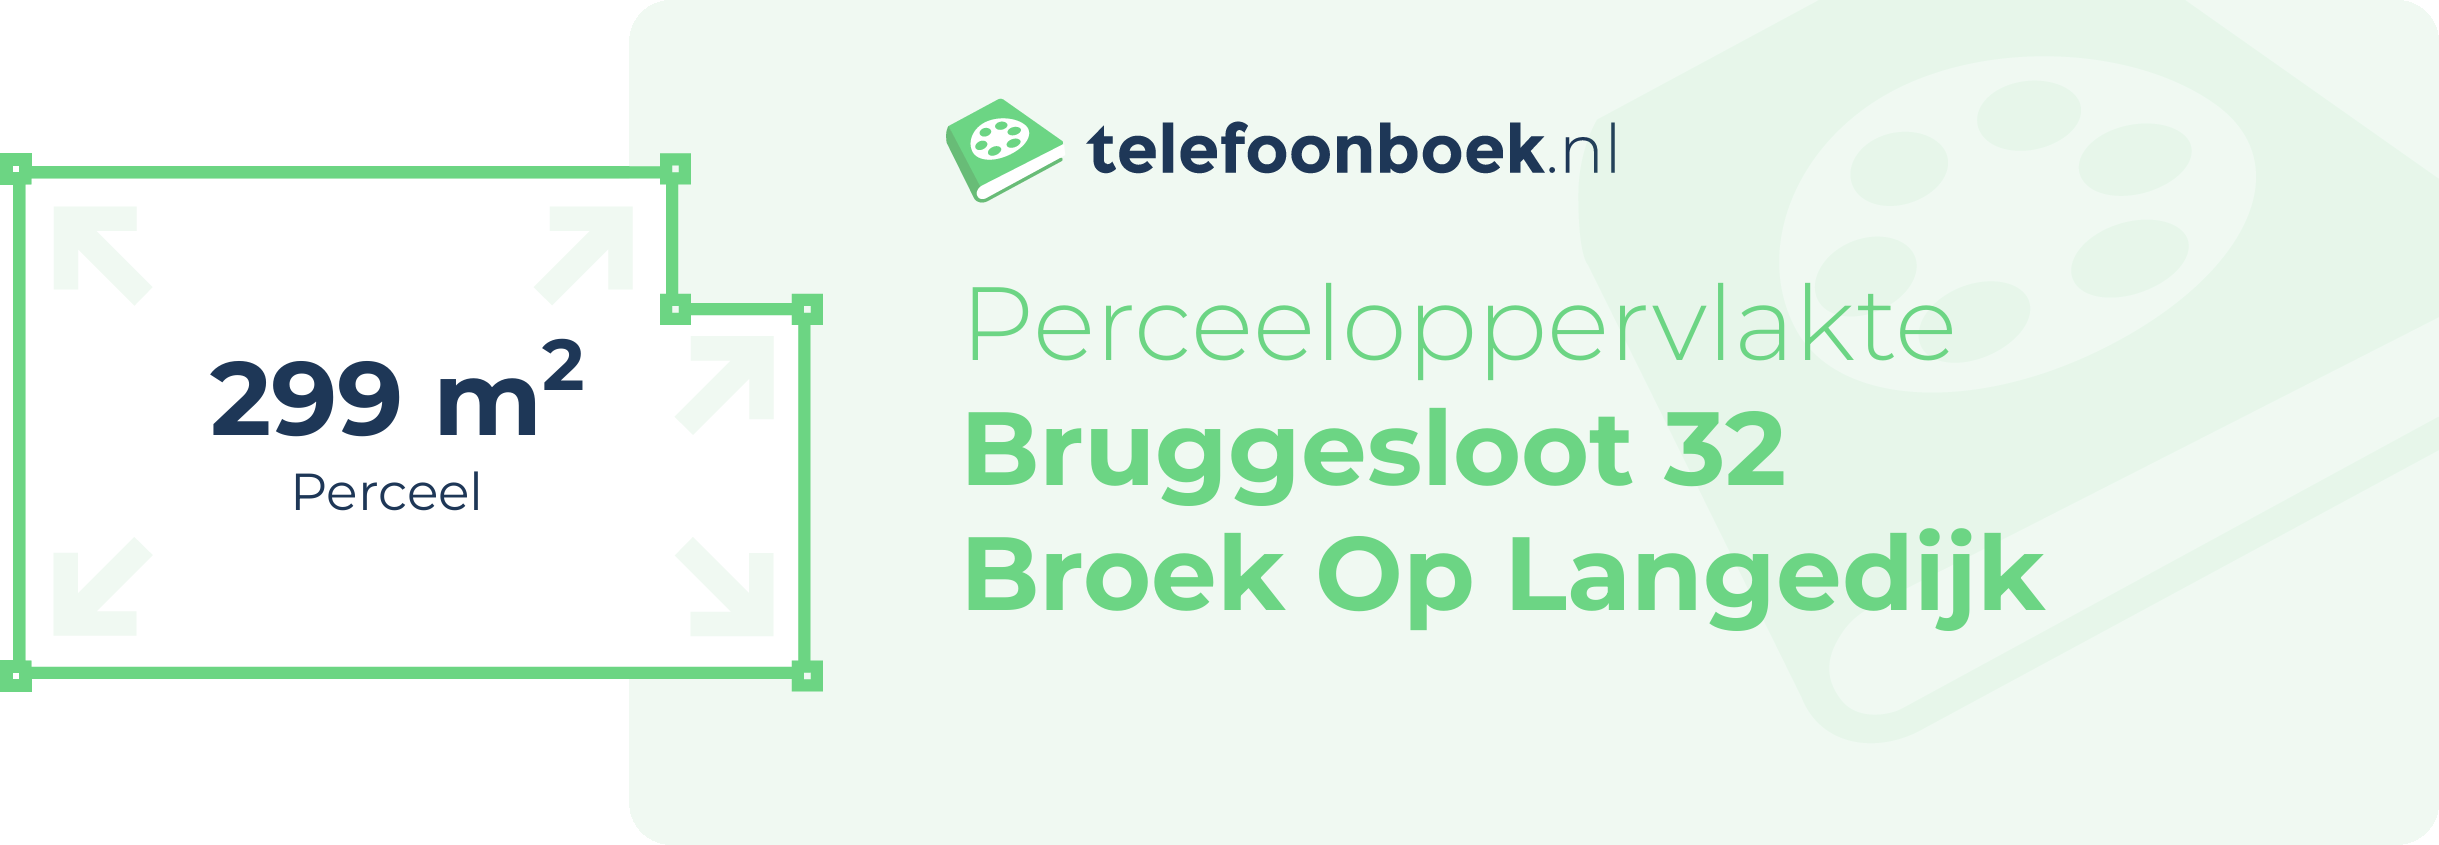 Perceeloppervlakte Bruggesloot 32 Broek Op Langedijk